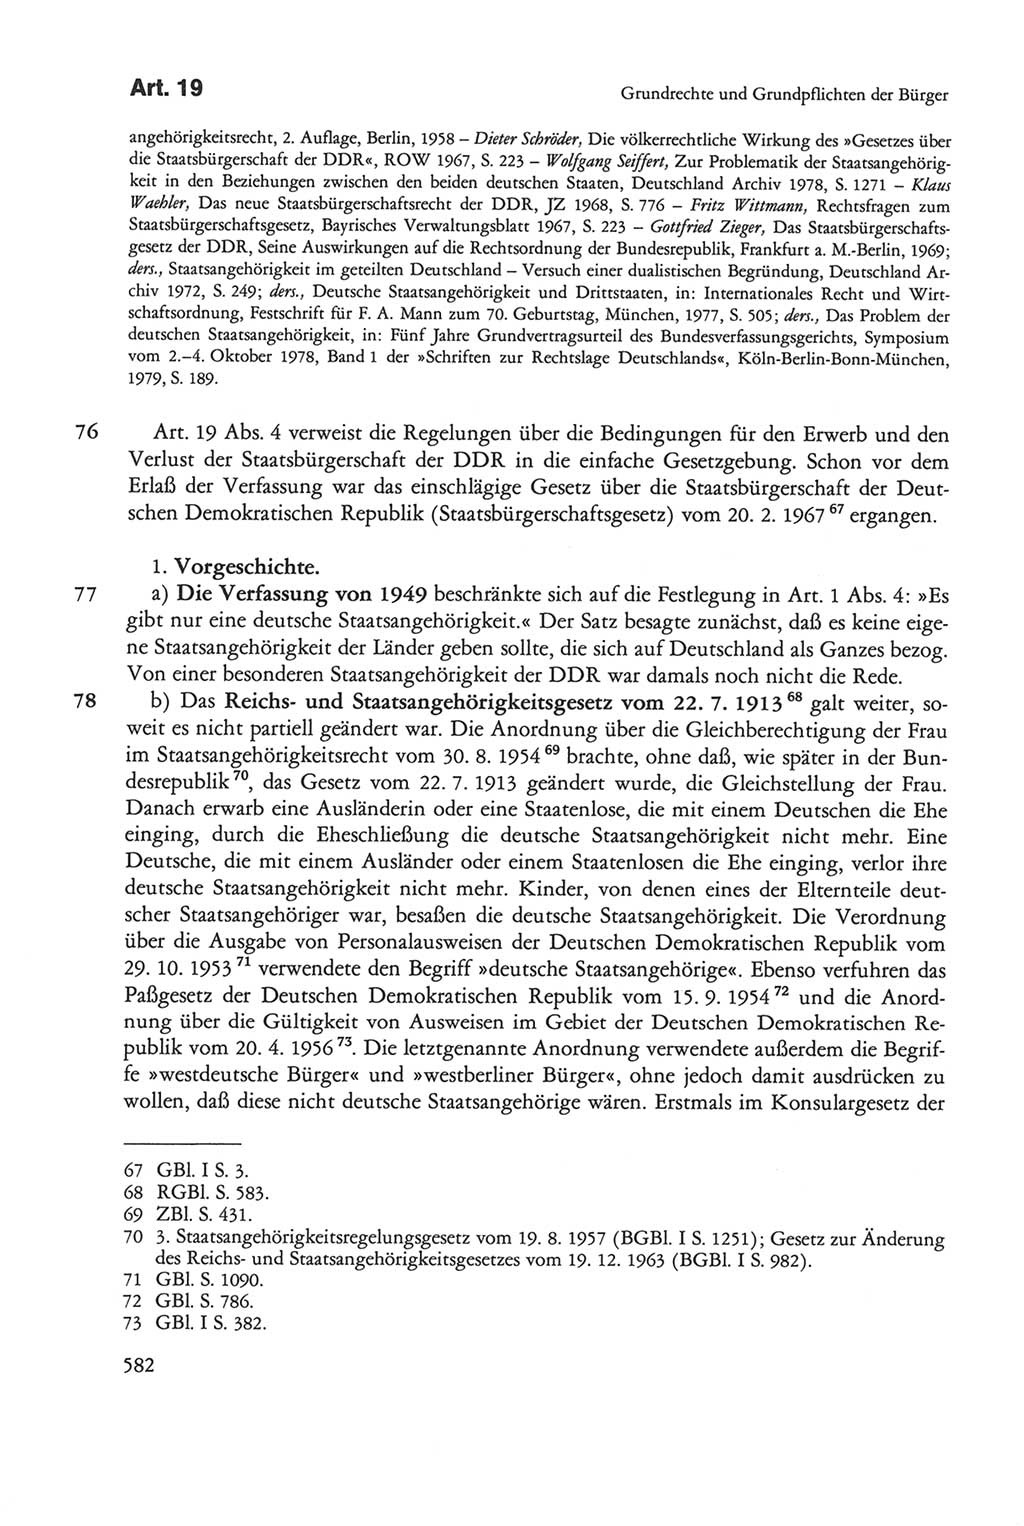 Die sozialistische Verfassung der Deutschen Demokratischen Republik (DDR), Kommentar mit einem Nachtrag 1997, Seite 582 (Soz. Verf. DDR Komm. Nachtr. 1997, S. 582)